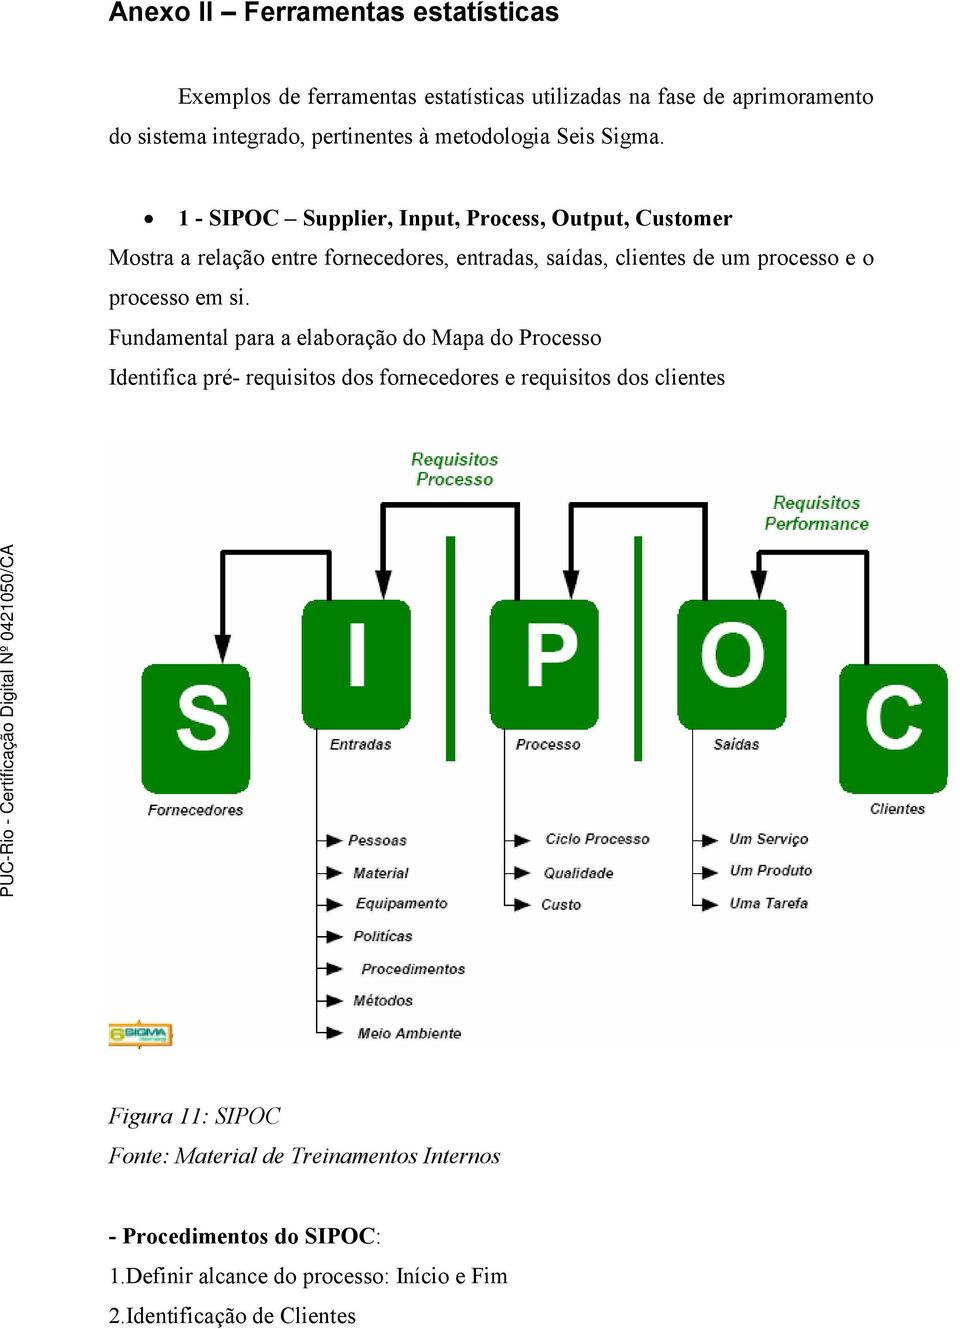 1 - SIPOC Supplier, Input, Process, Output, Customer Mostra a relação entre fornecedores, entradas, saídas, clientes de um processo e o processo em